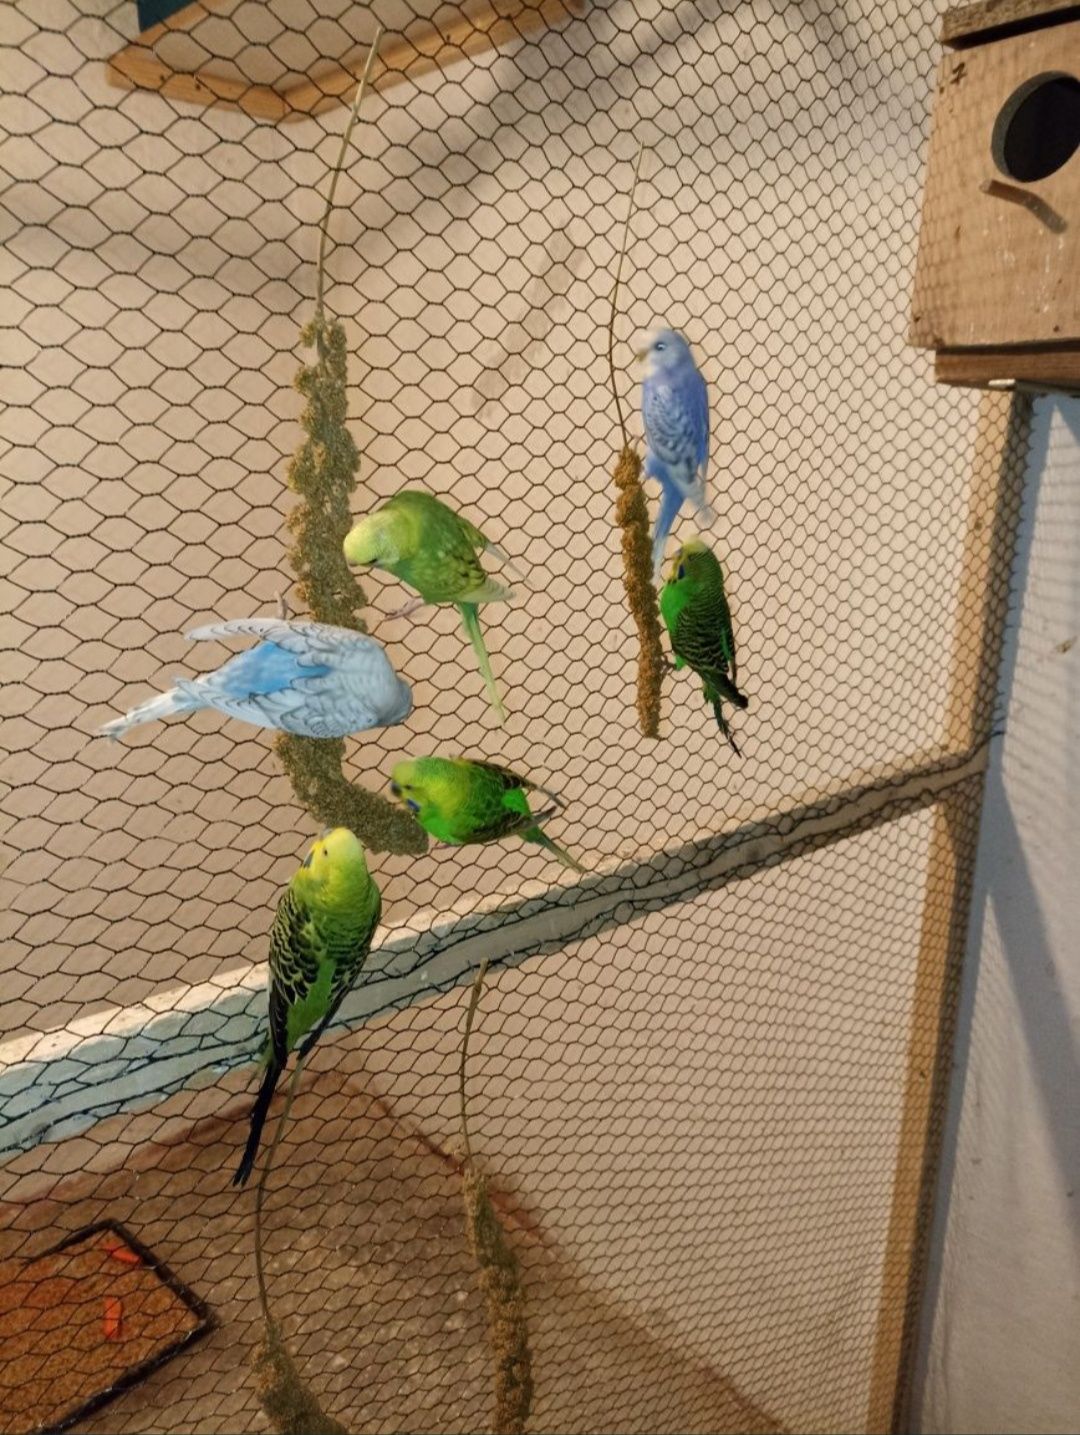 Papagali perusi (crescatorie)